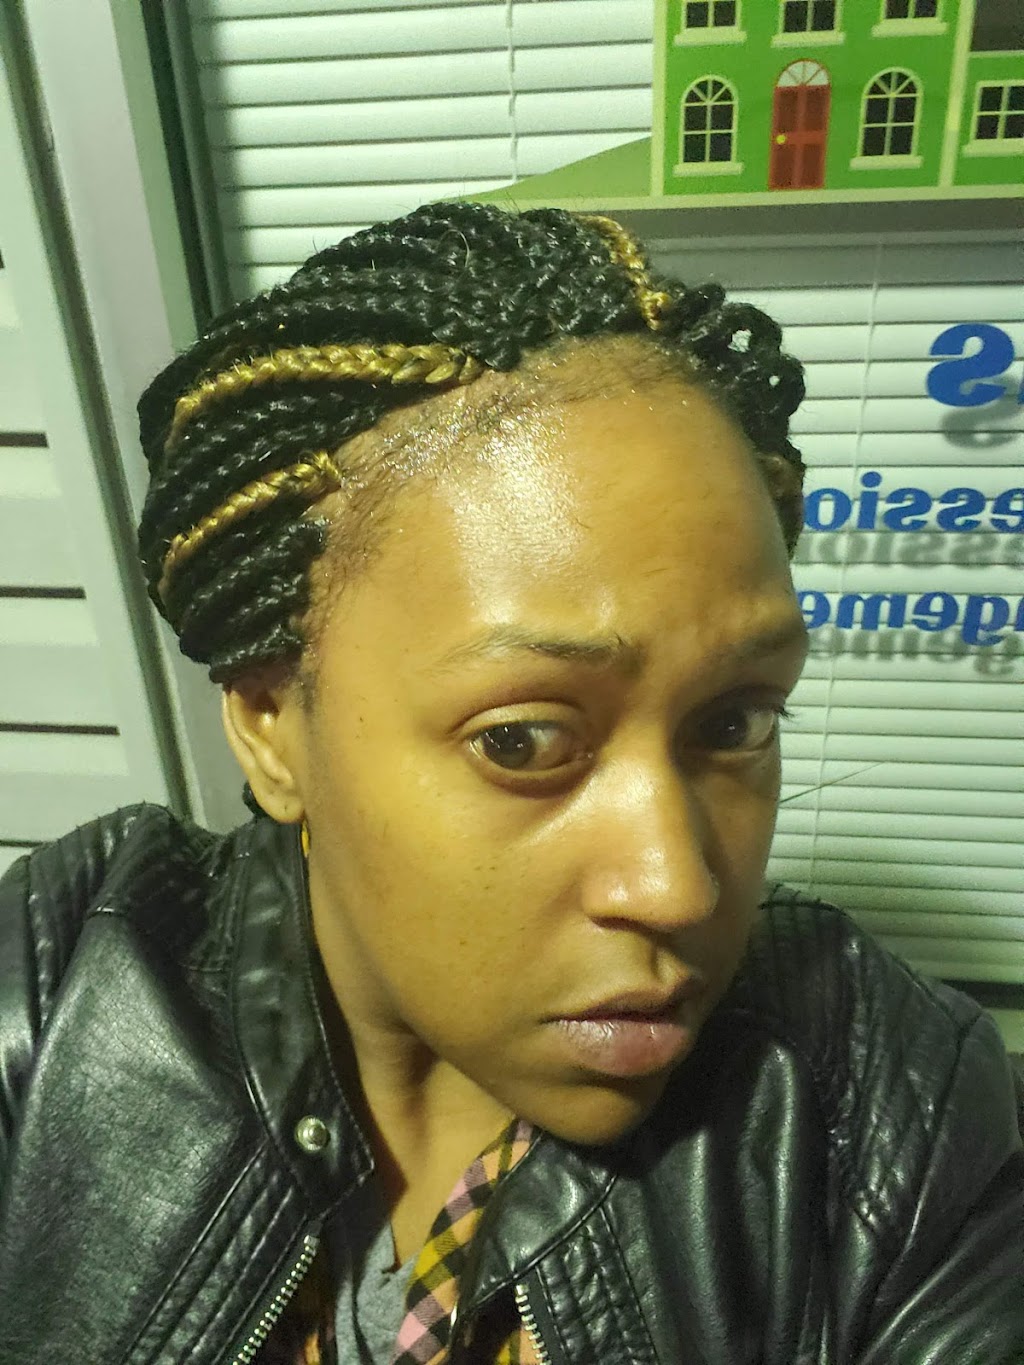 Dela African hair braiding &weaving | 3841 N Dupont Hwy, Dover, DE 19901 | Phone: (302) 734-3129